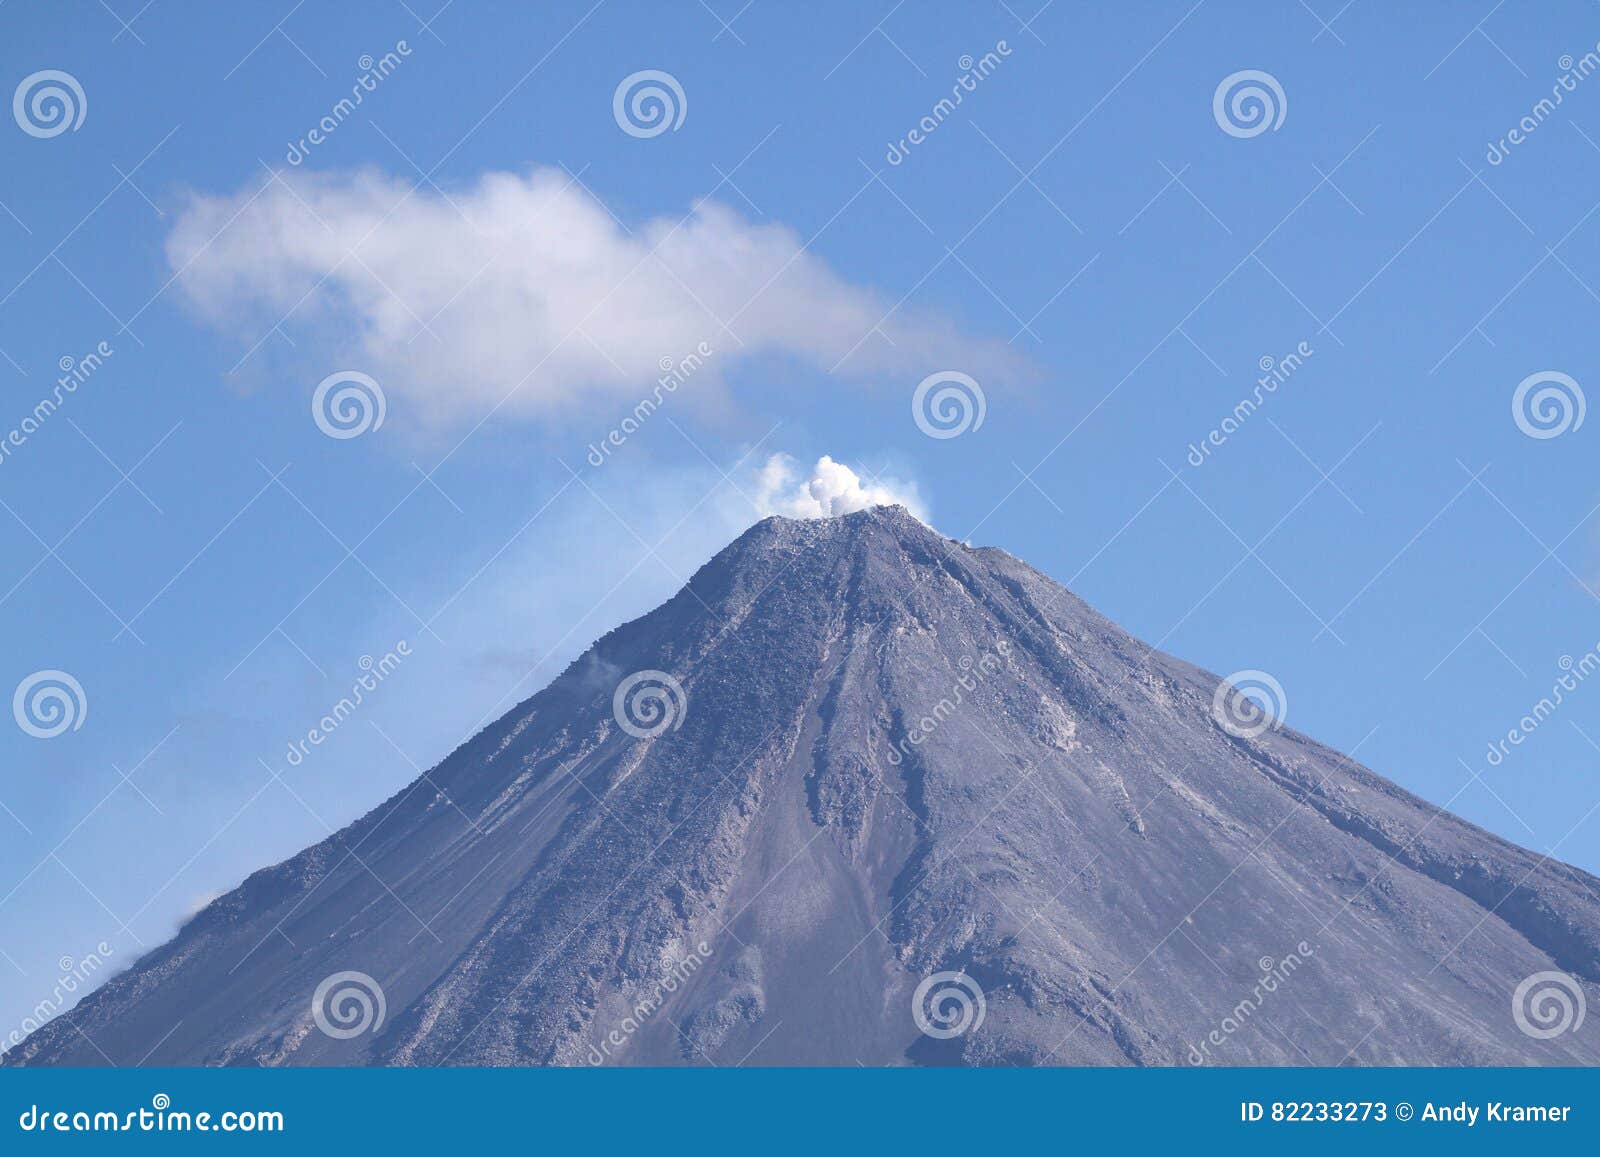 volcan de colima, mexico